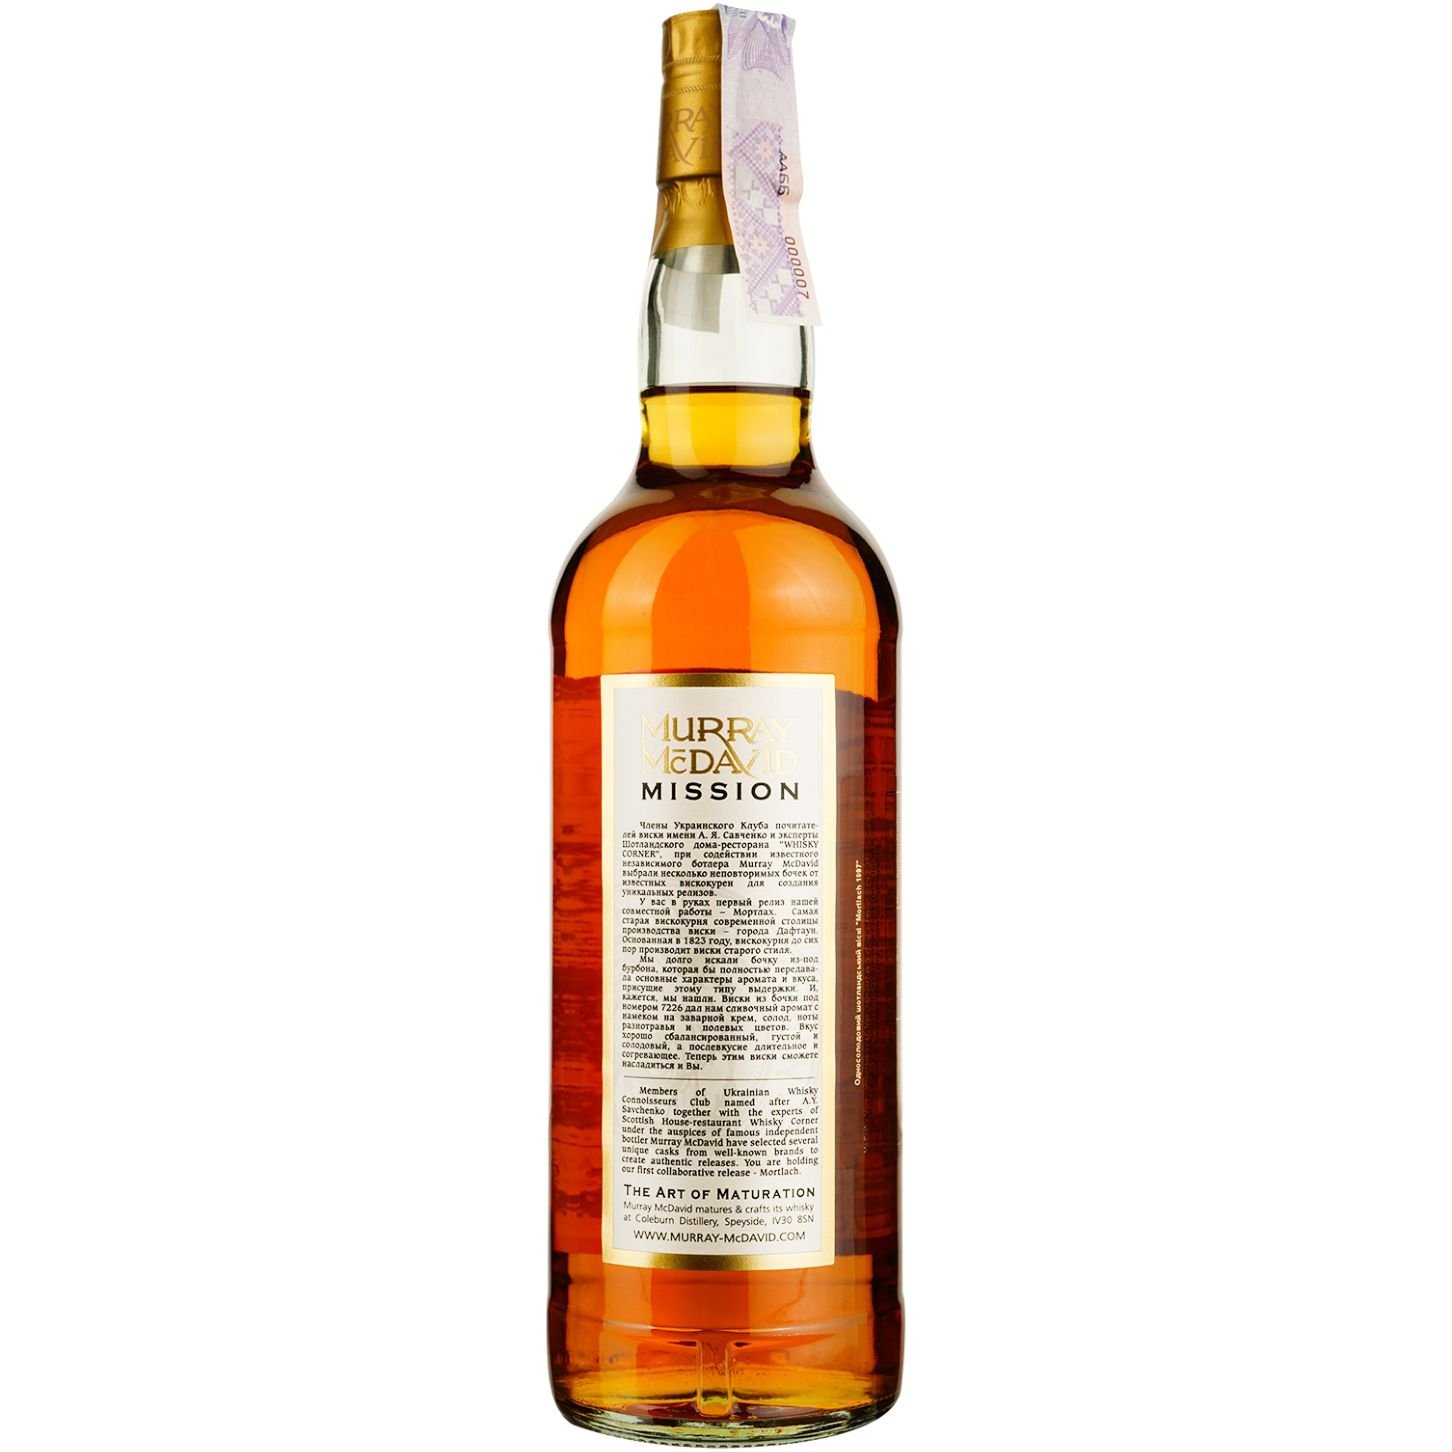 Віскі Mortlach Murray McDavid 19 Years Old Single Malt Scotch Whisky, у подарунковій упаковці, 55,1%, 0,7 л - фото 4